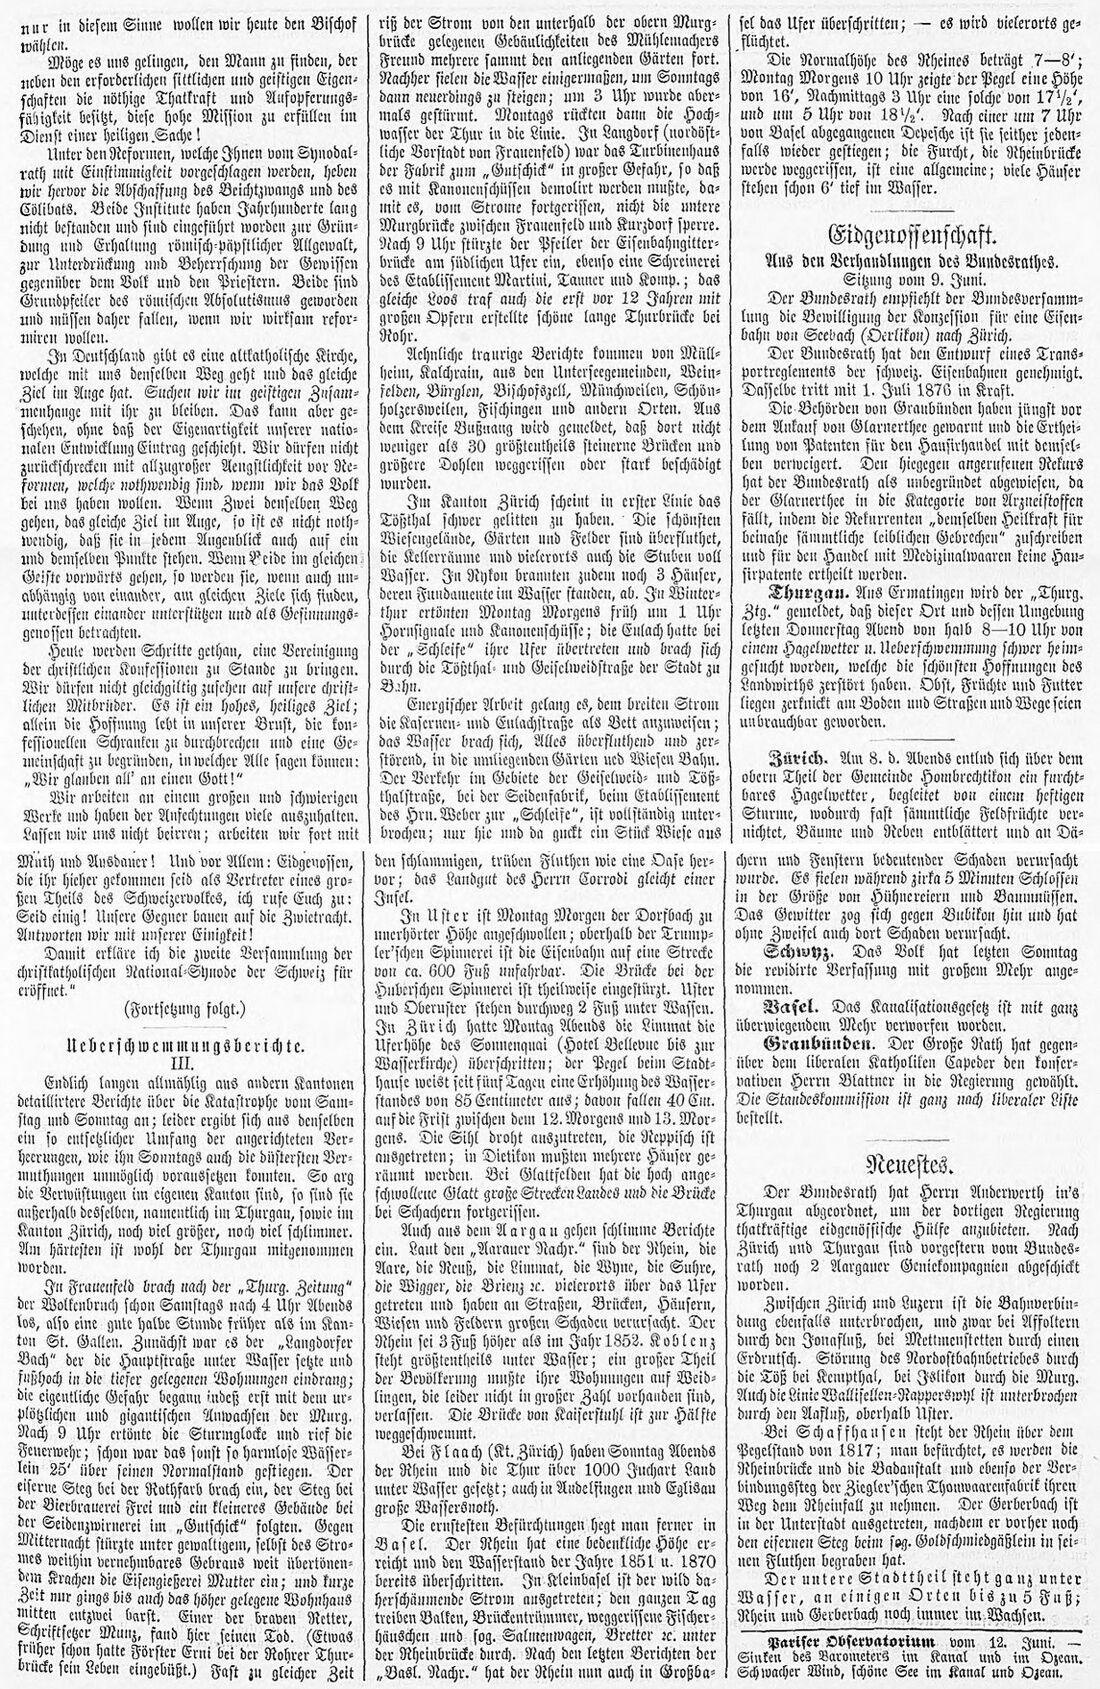 18760611 01 Flood Ostschweiz St Galler Zeitung 14. Juni 1876.jpg